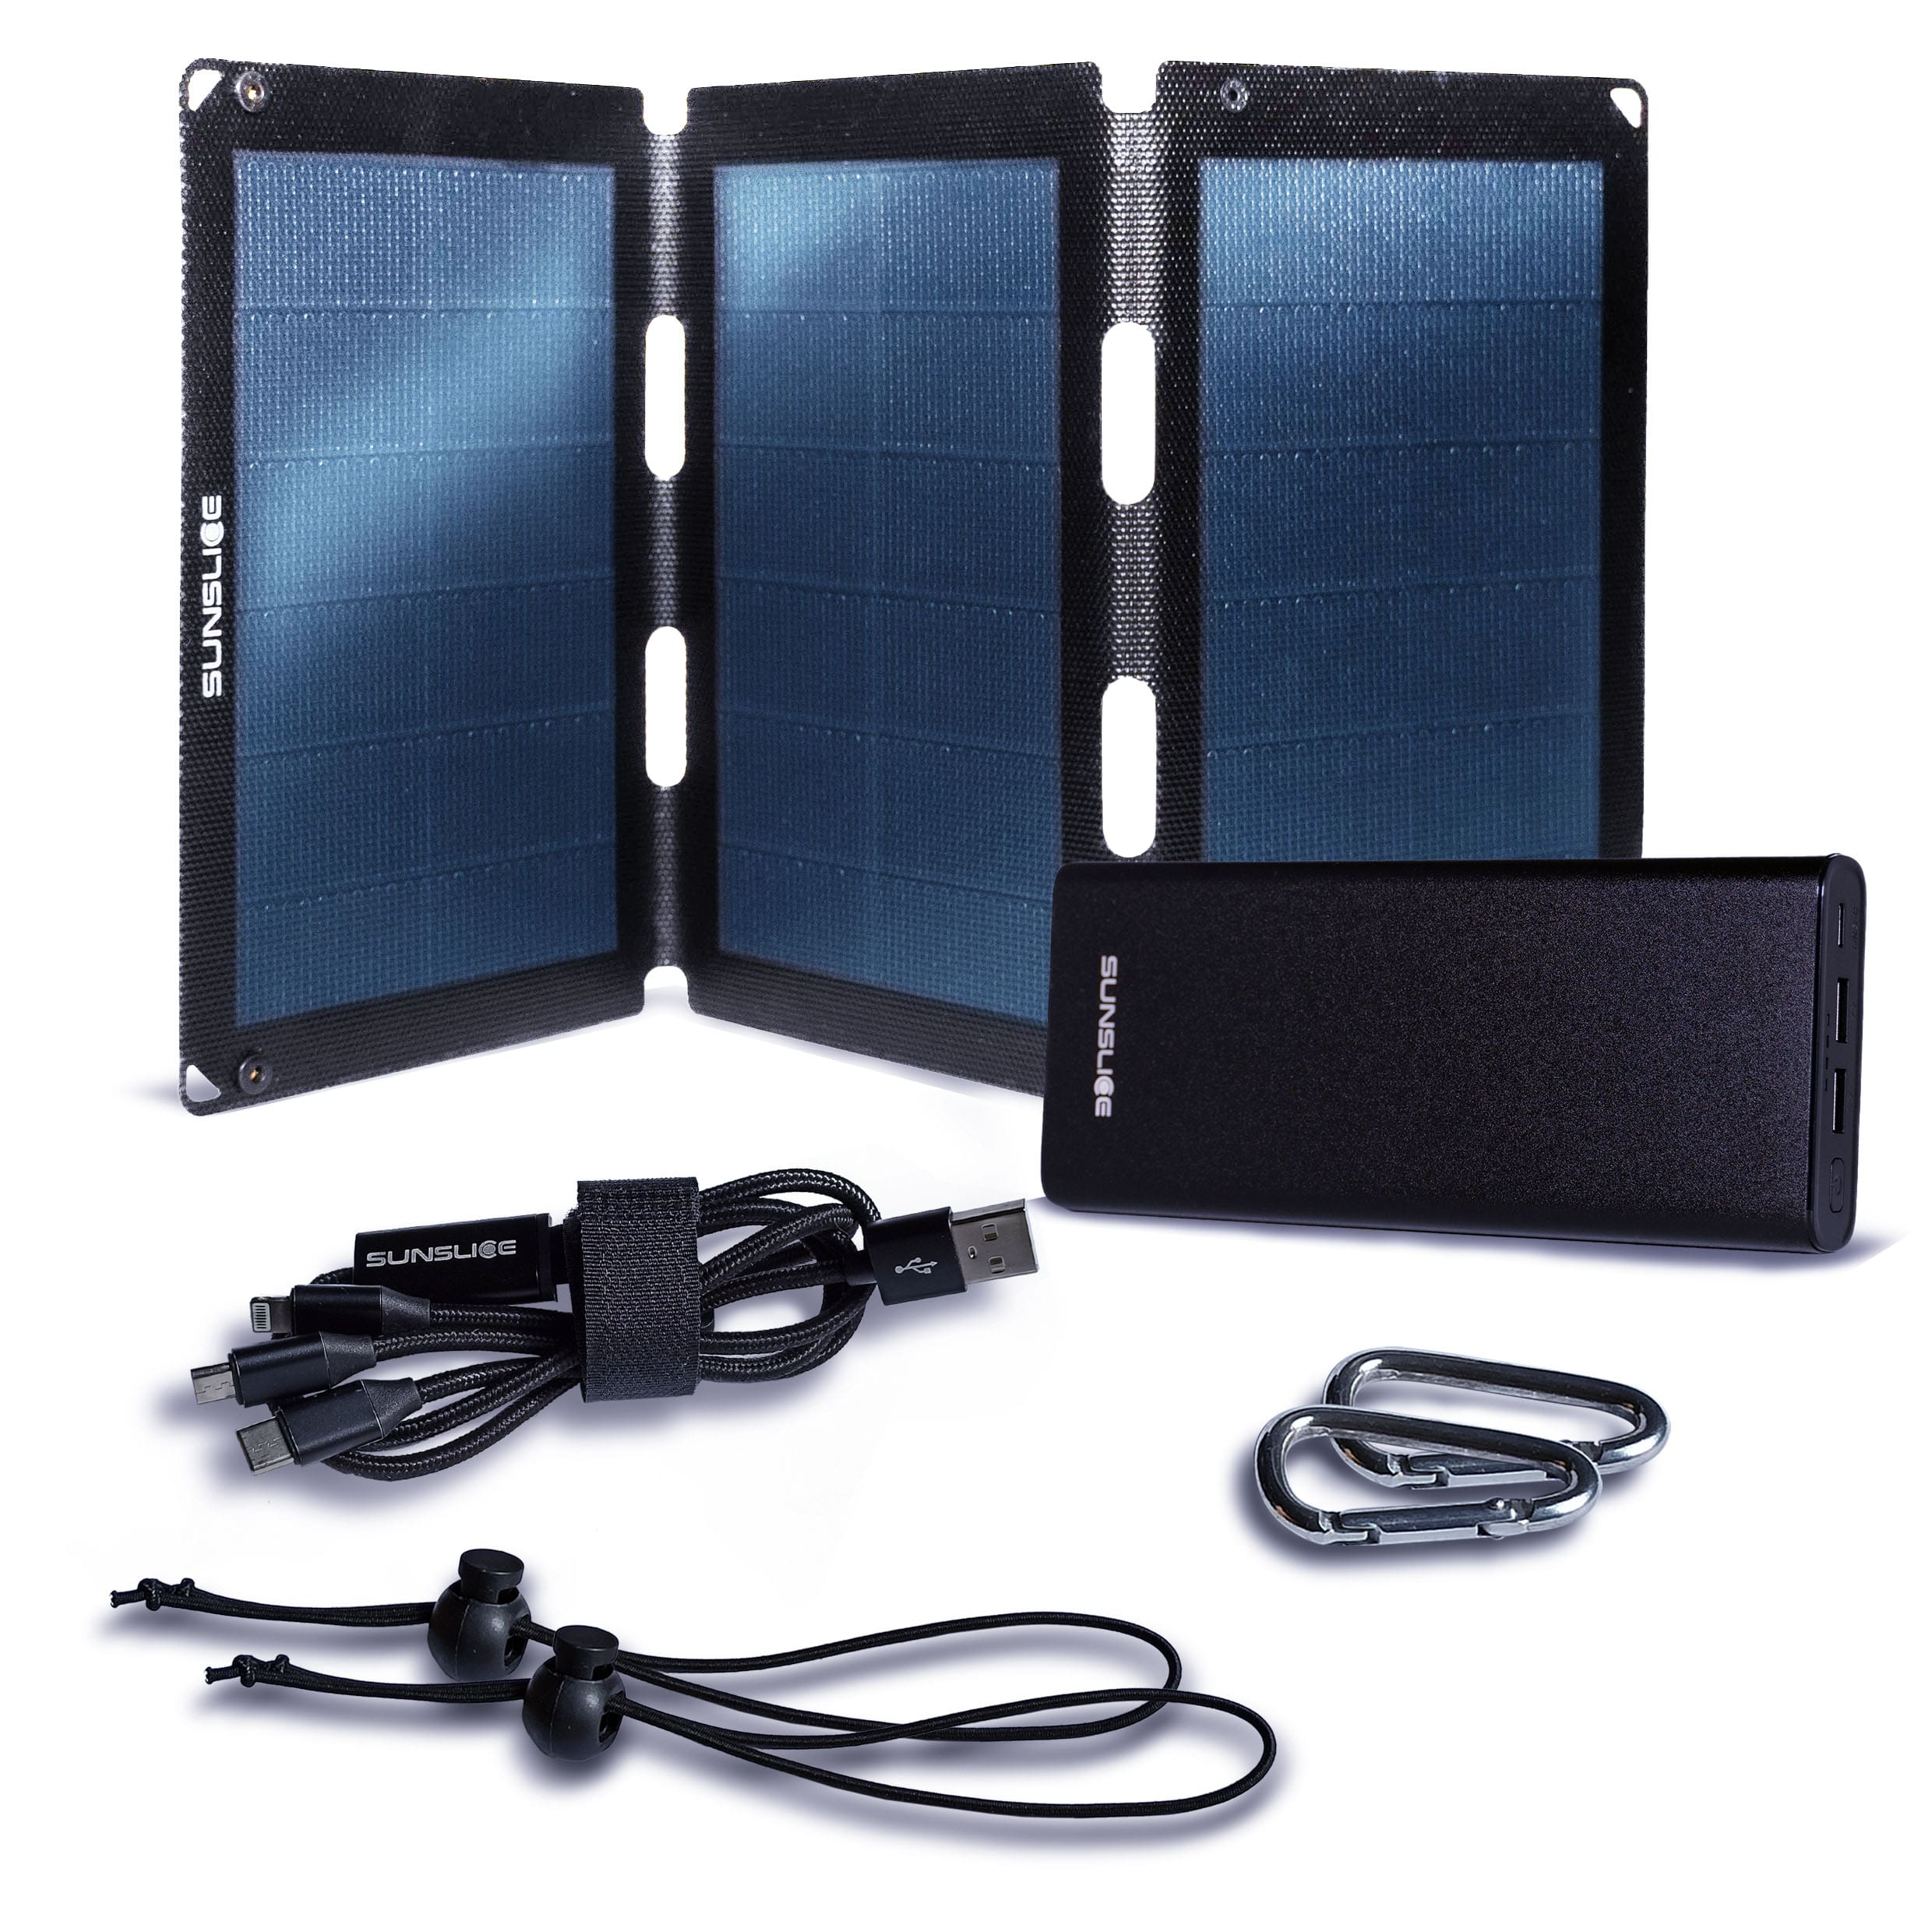 Kit comprenant un panneau solaire fusion flex 18 et un power bank Gravity 100 pour ordinateur portable + 2 mousquetons, 2 élastiques, 1 câble trident